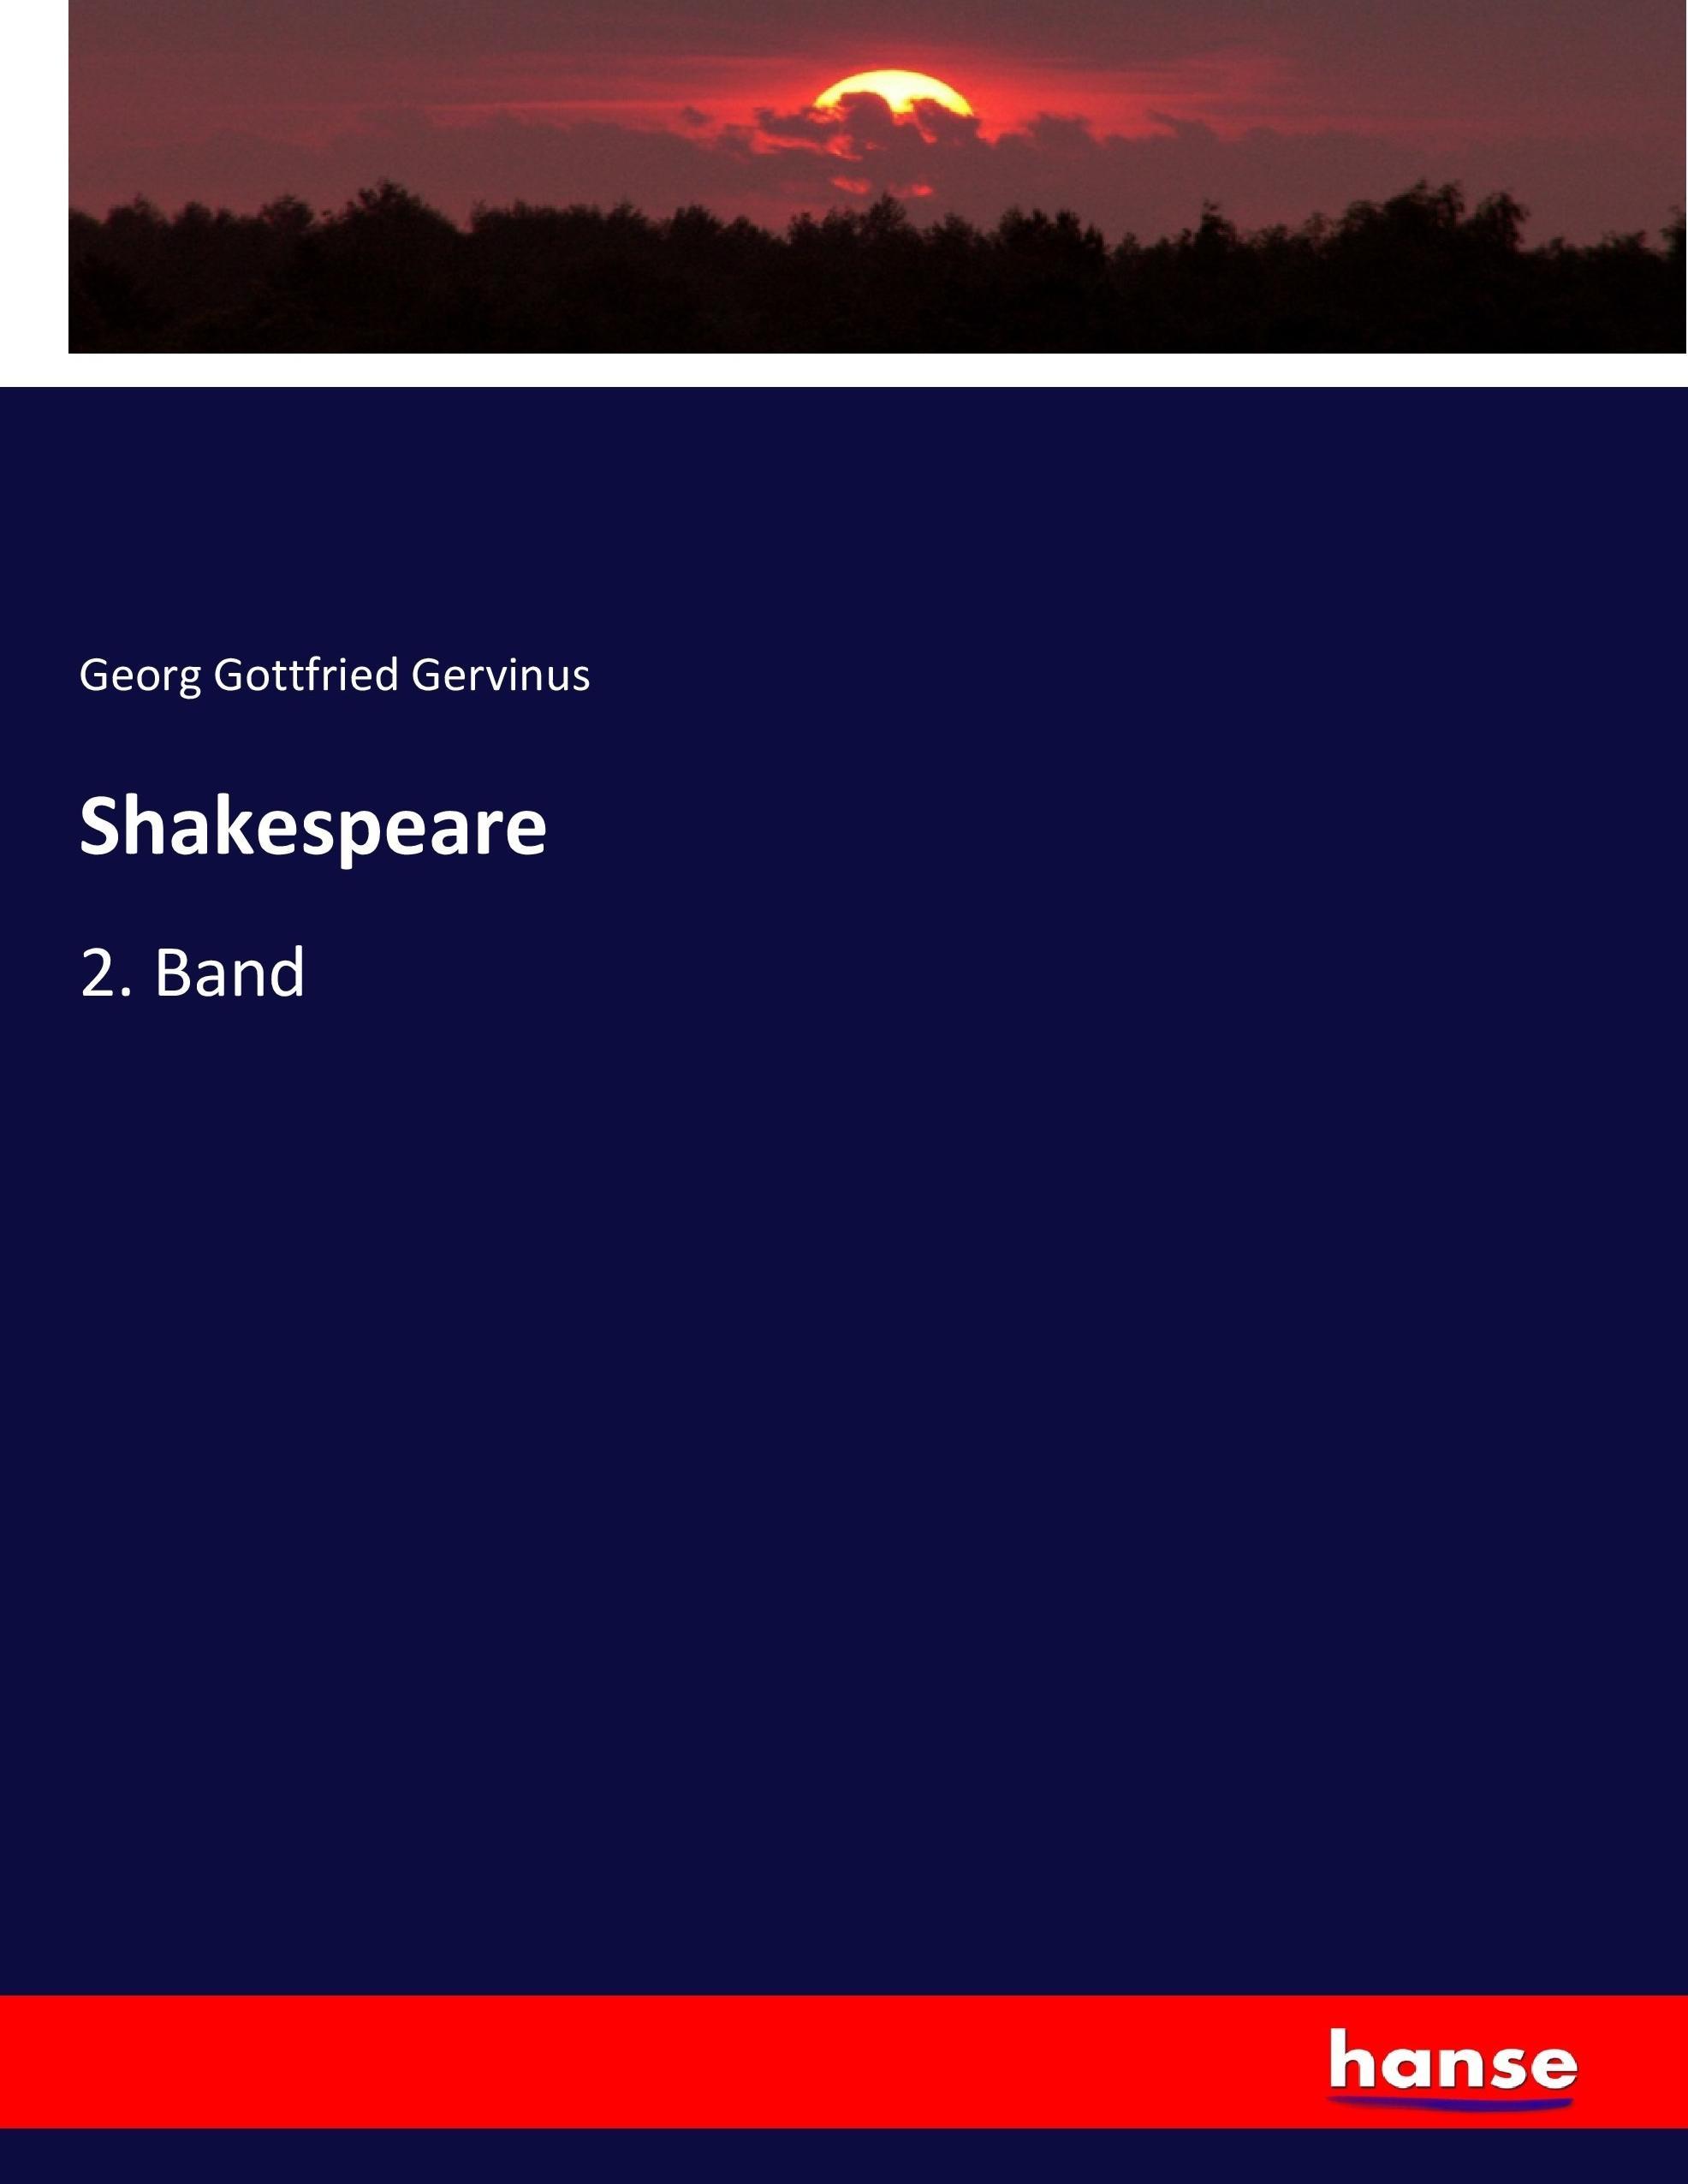 Shakespeare | 2. Band | Georg Gottfried Gervinus | Taschenbuch | Paperback | 612 S. | Deutsch | 2017 | hansebooks | EAN 9783744650366 - Gervinus, Georg Gottfried